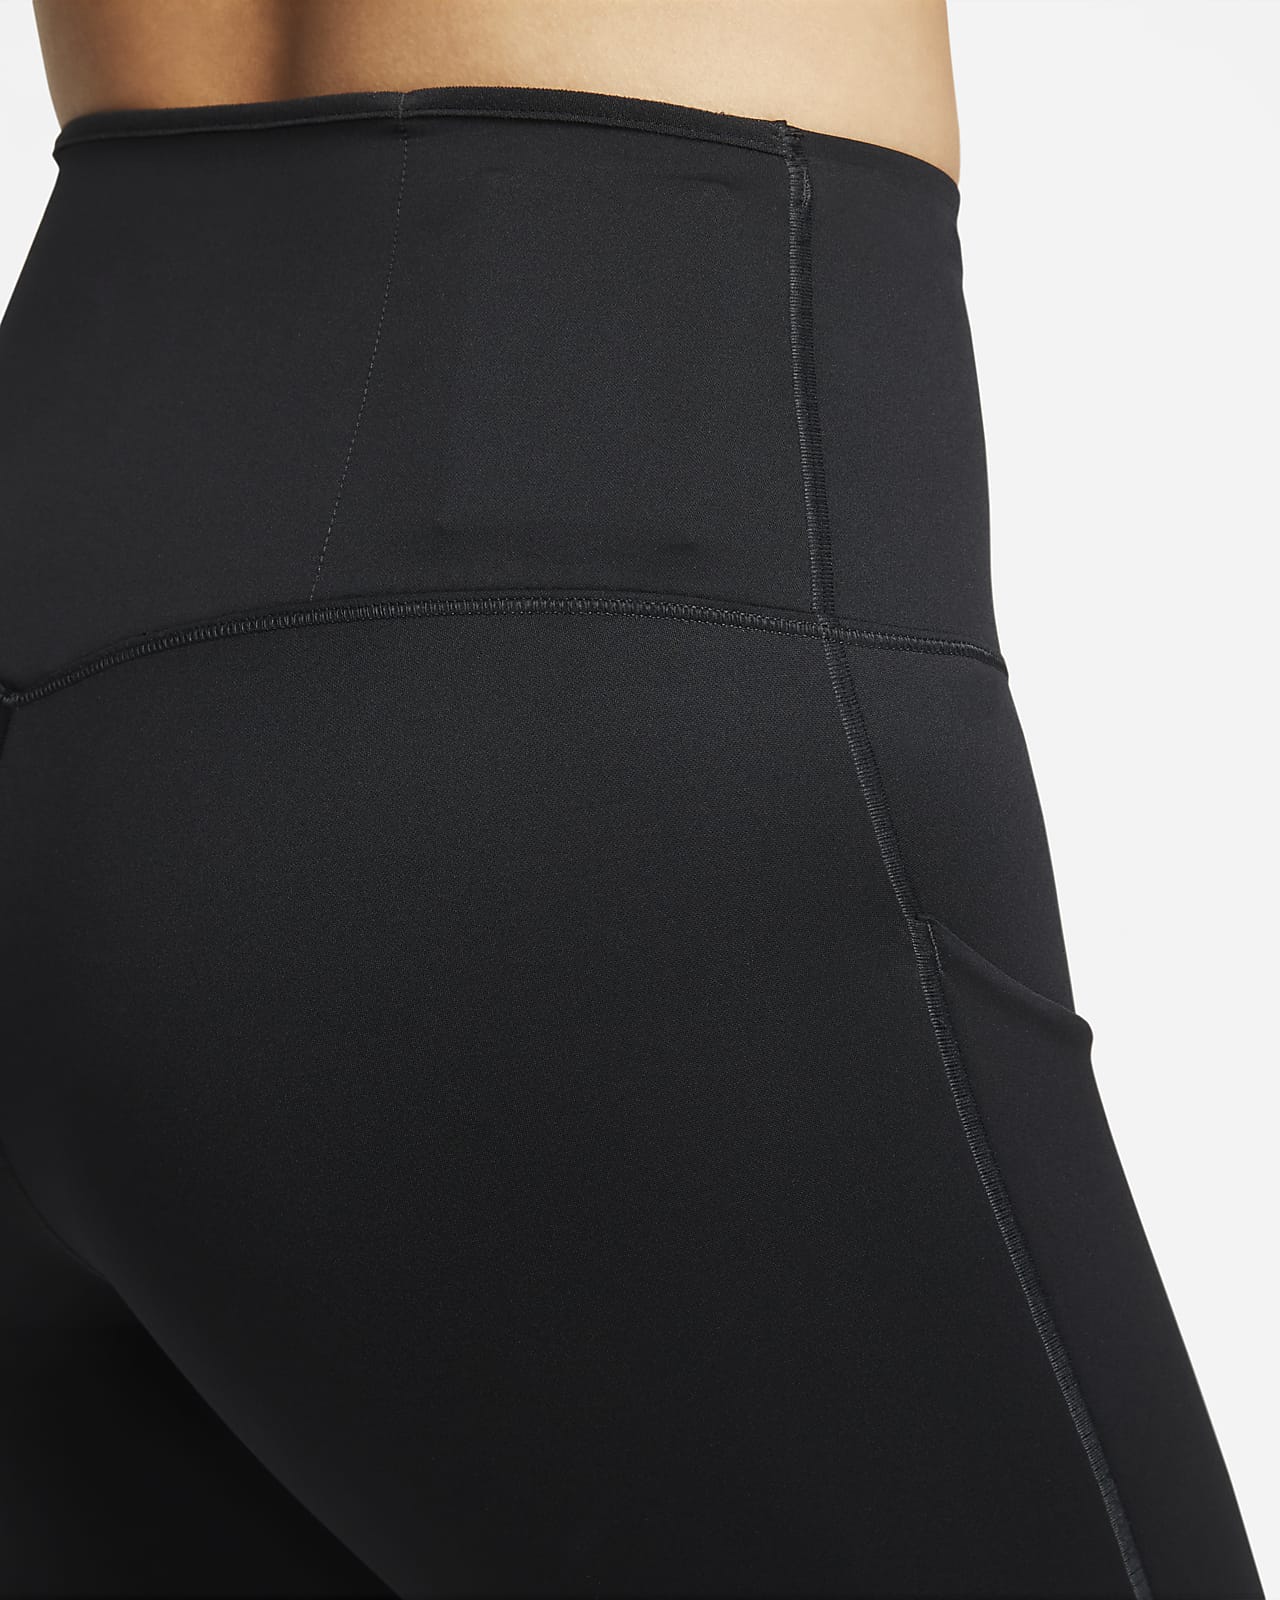 Leggings de tiro alto de 7/8 de sujeción firme con bolsillos para mujer Nike  Go. Nike MX